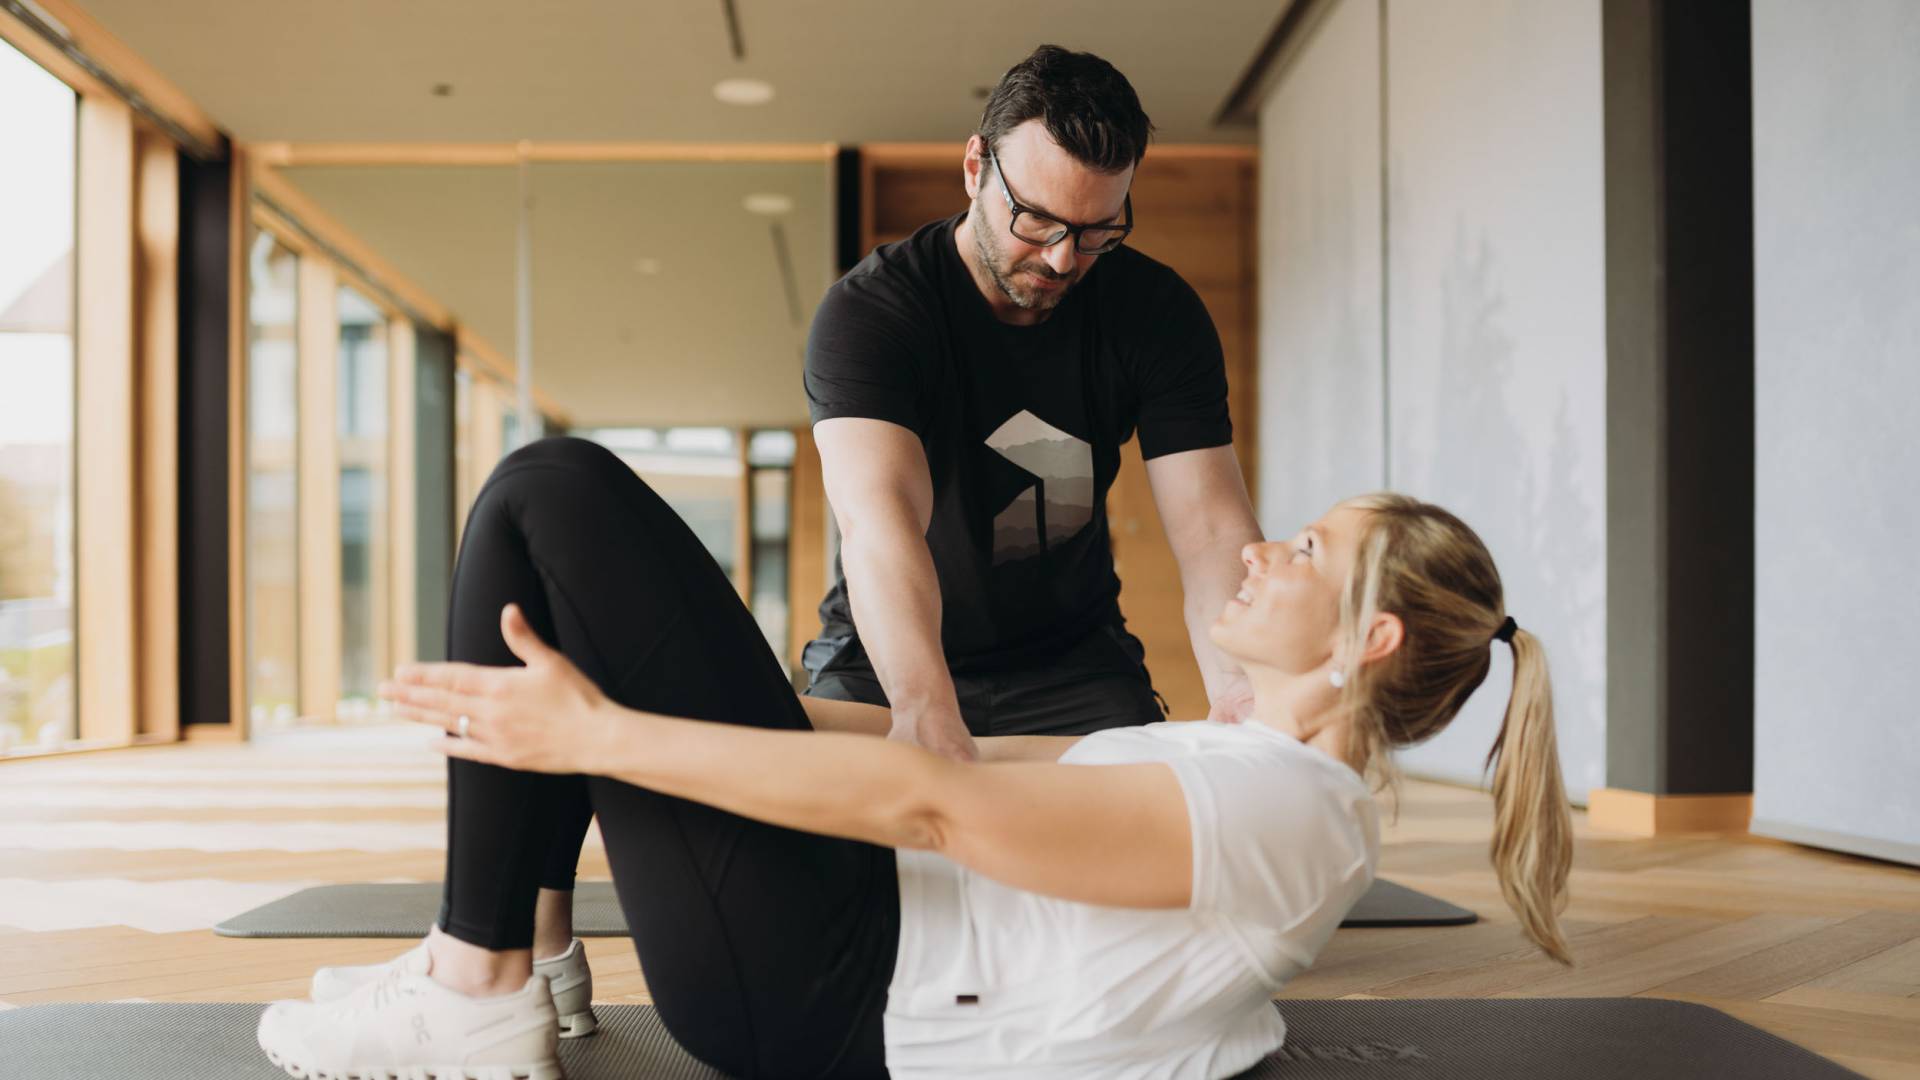 Eine junge Frau erhält Hilfestellung bei einer Fitnessübung auf einer Gymnastikmatte in einem modernen Studio.